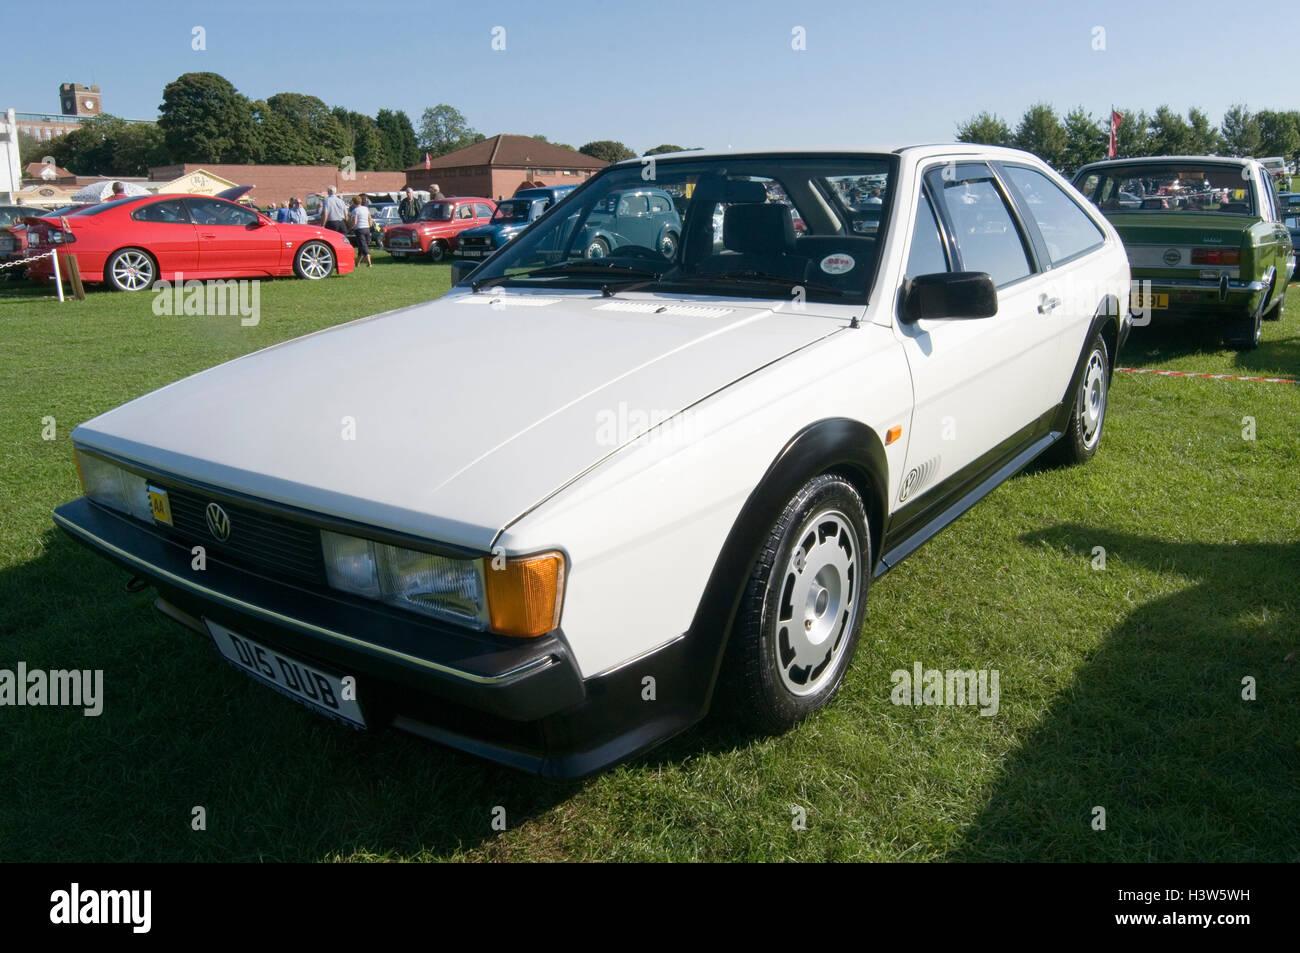 Vw volkswagen sirocco 2 portes coupé 80s 1980s Banque D'Images